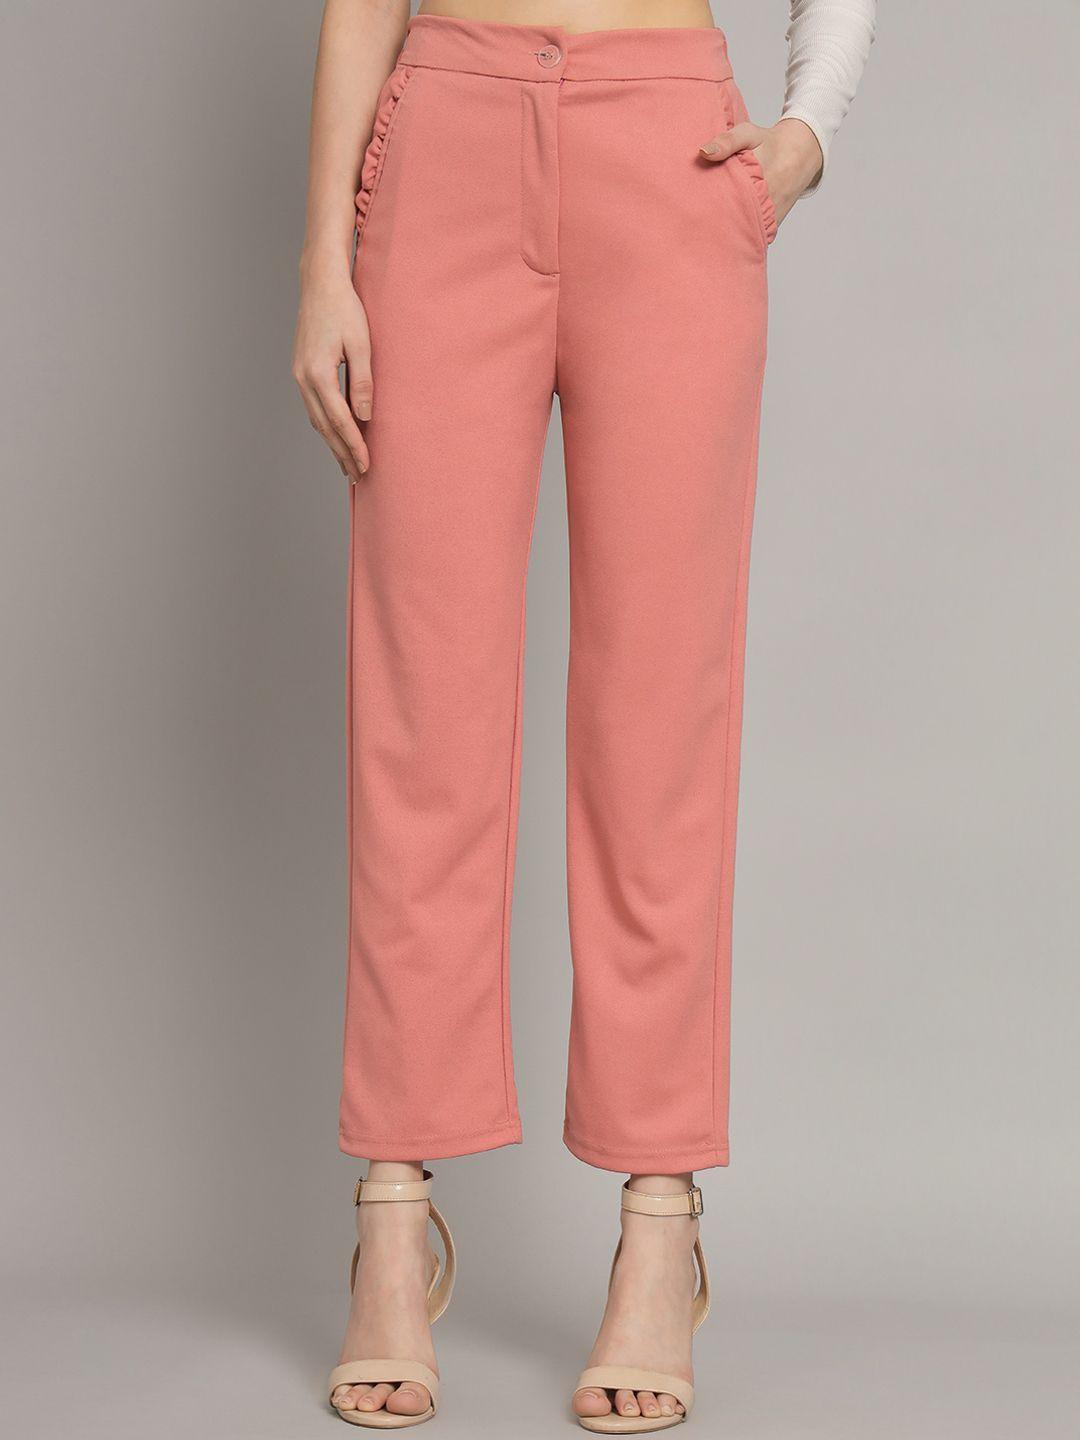 q-rious women peach-coloured trousers